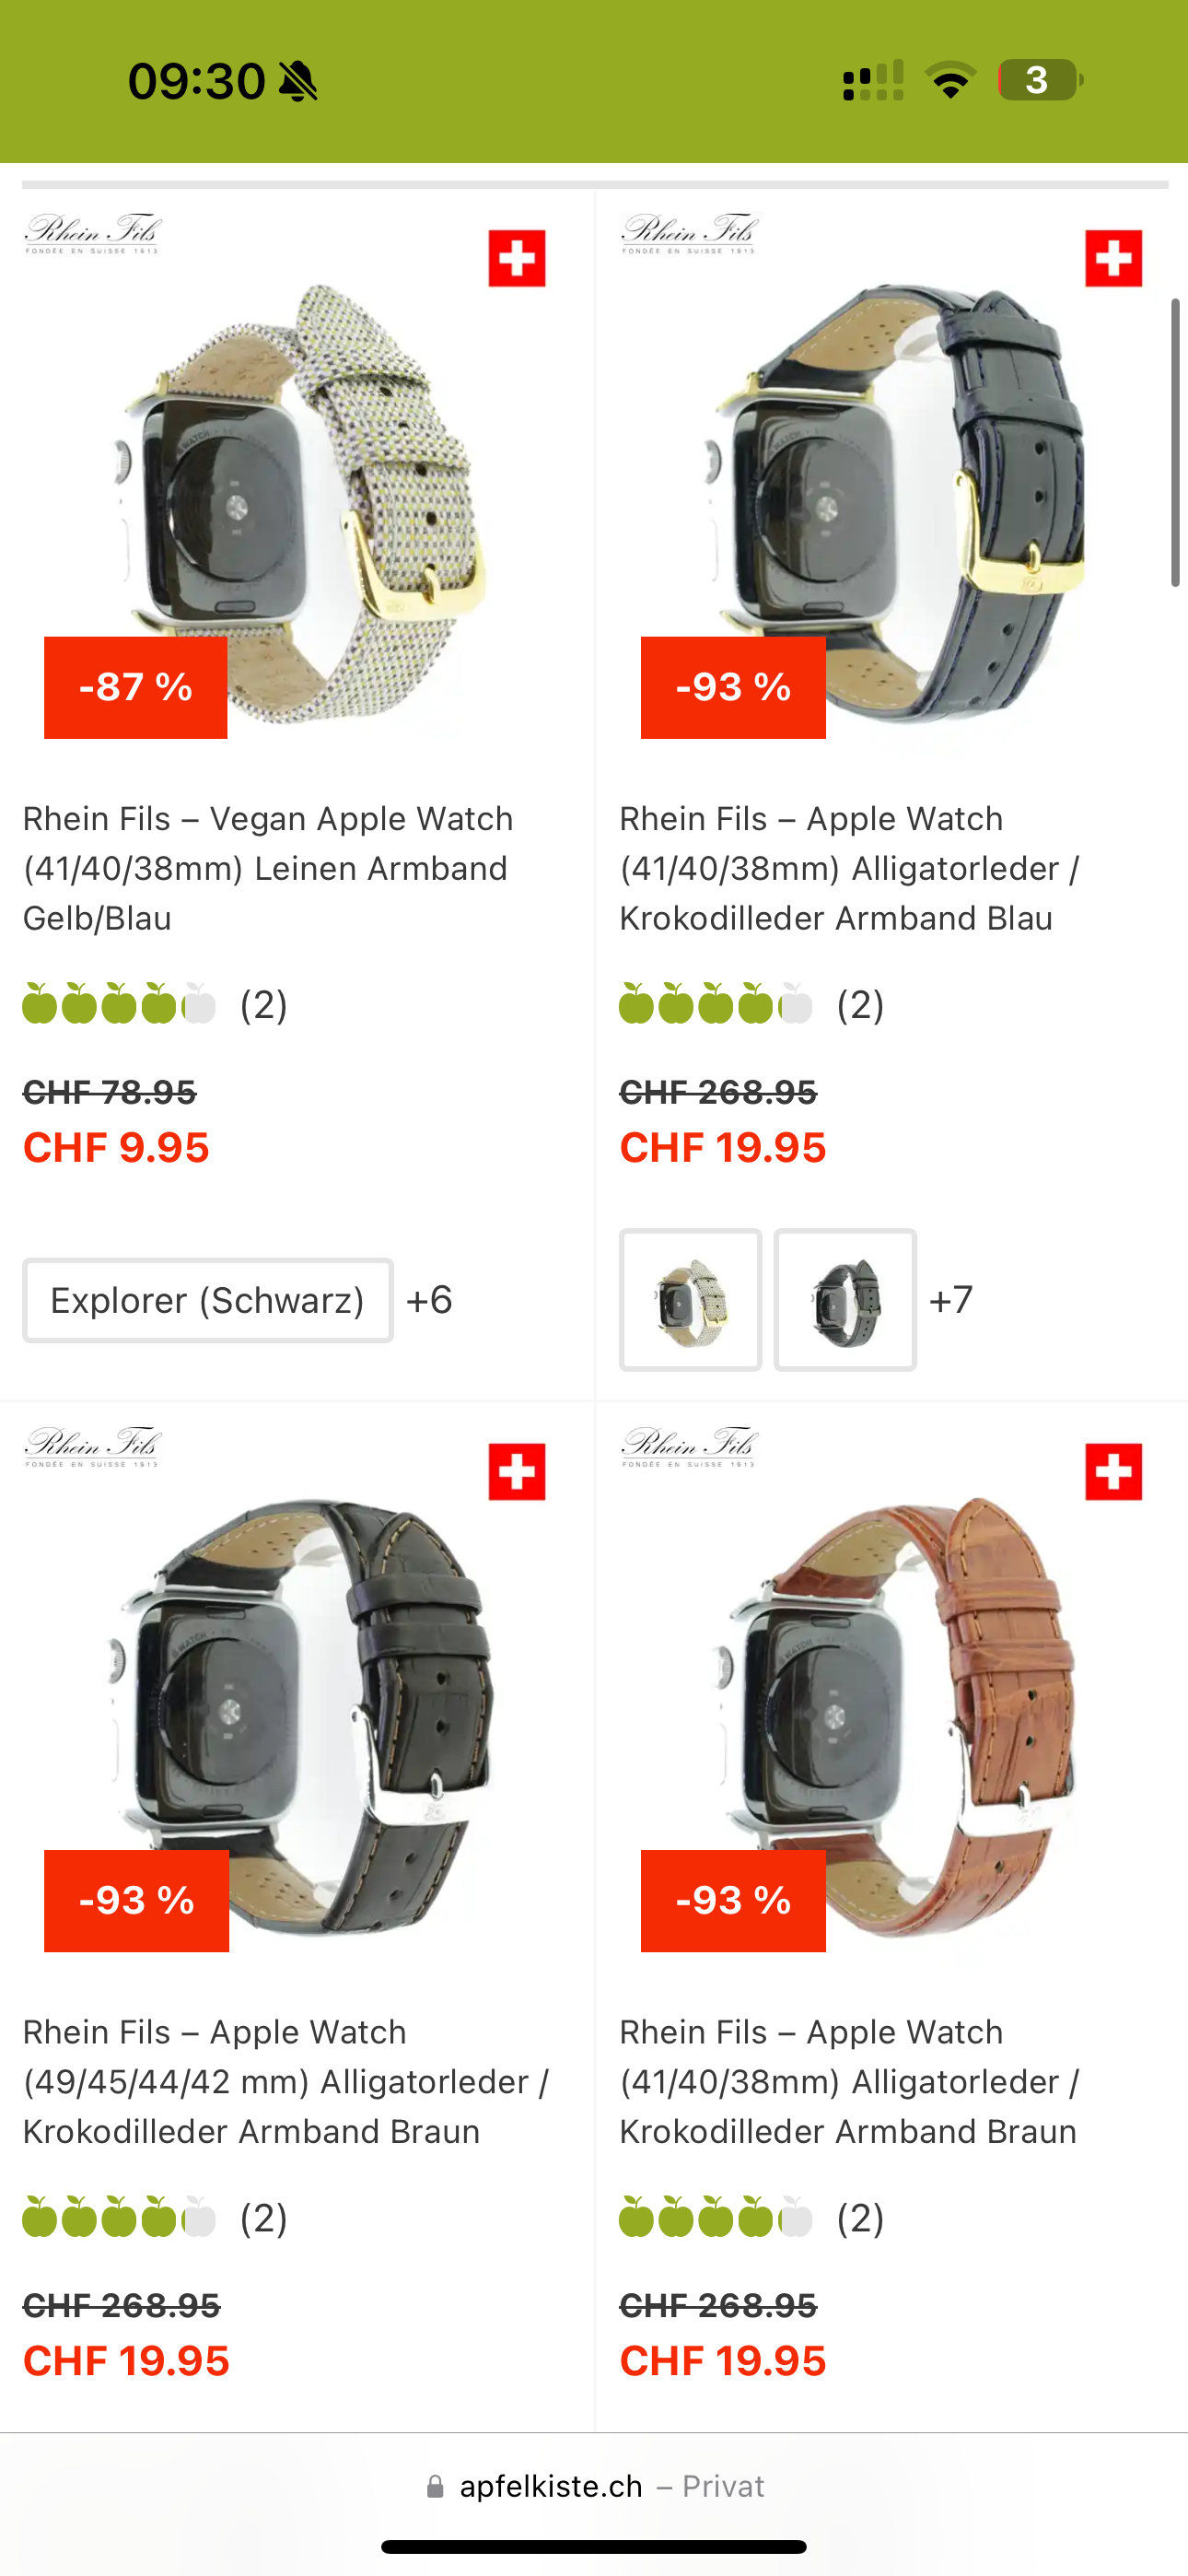 Reduzierte hochwertige Rhein Fils Apple Watch Bänder (bspw. Alligatorleder) bei Apfelkiste